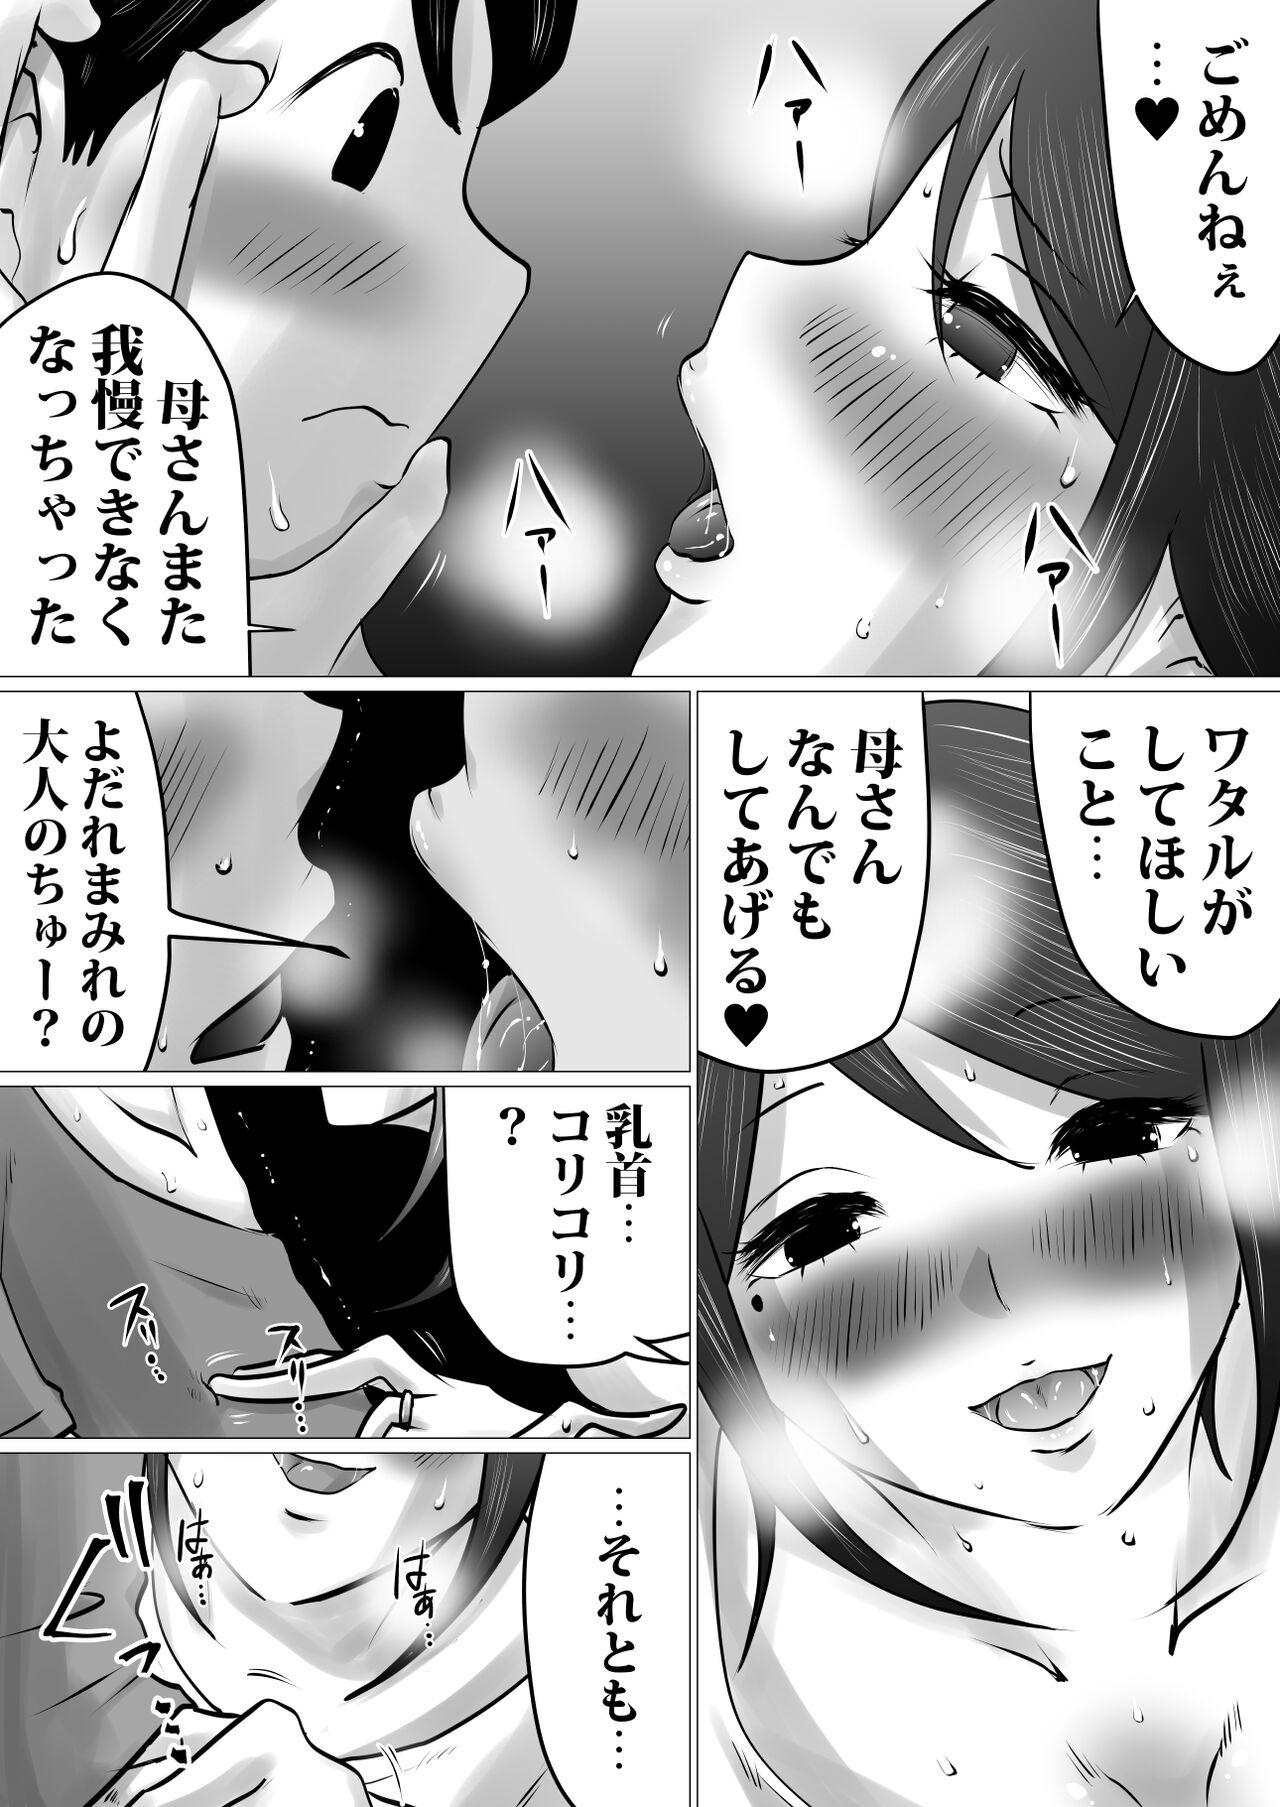 Gapes Gaping Asshole Bokushika Shiranai, Cool na Haha no Ura no Kao. - Original Police - Page 5